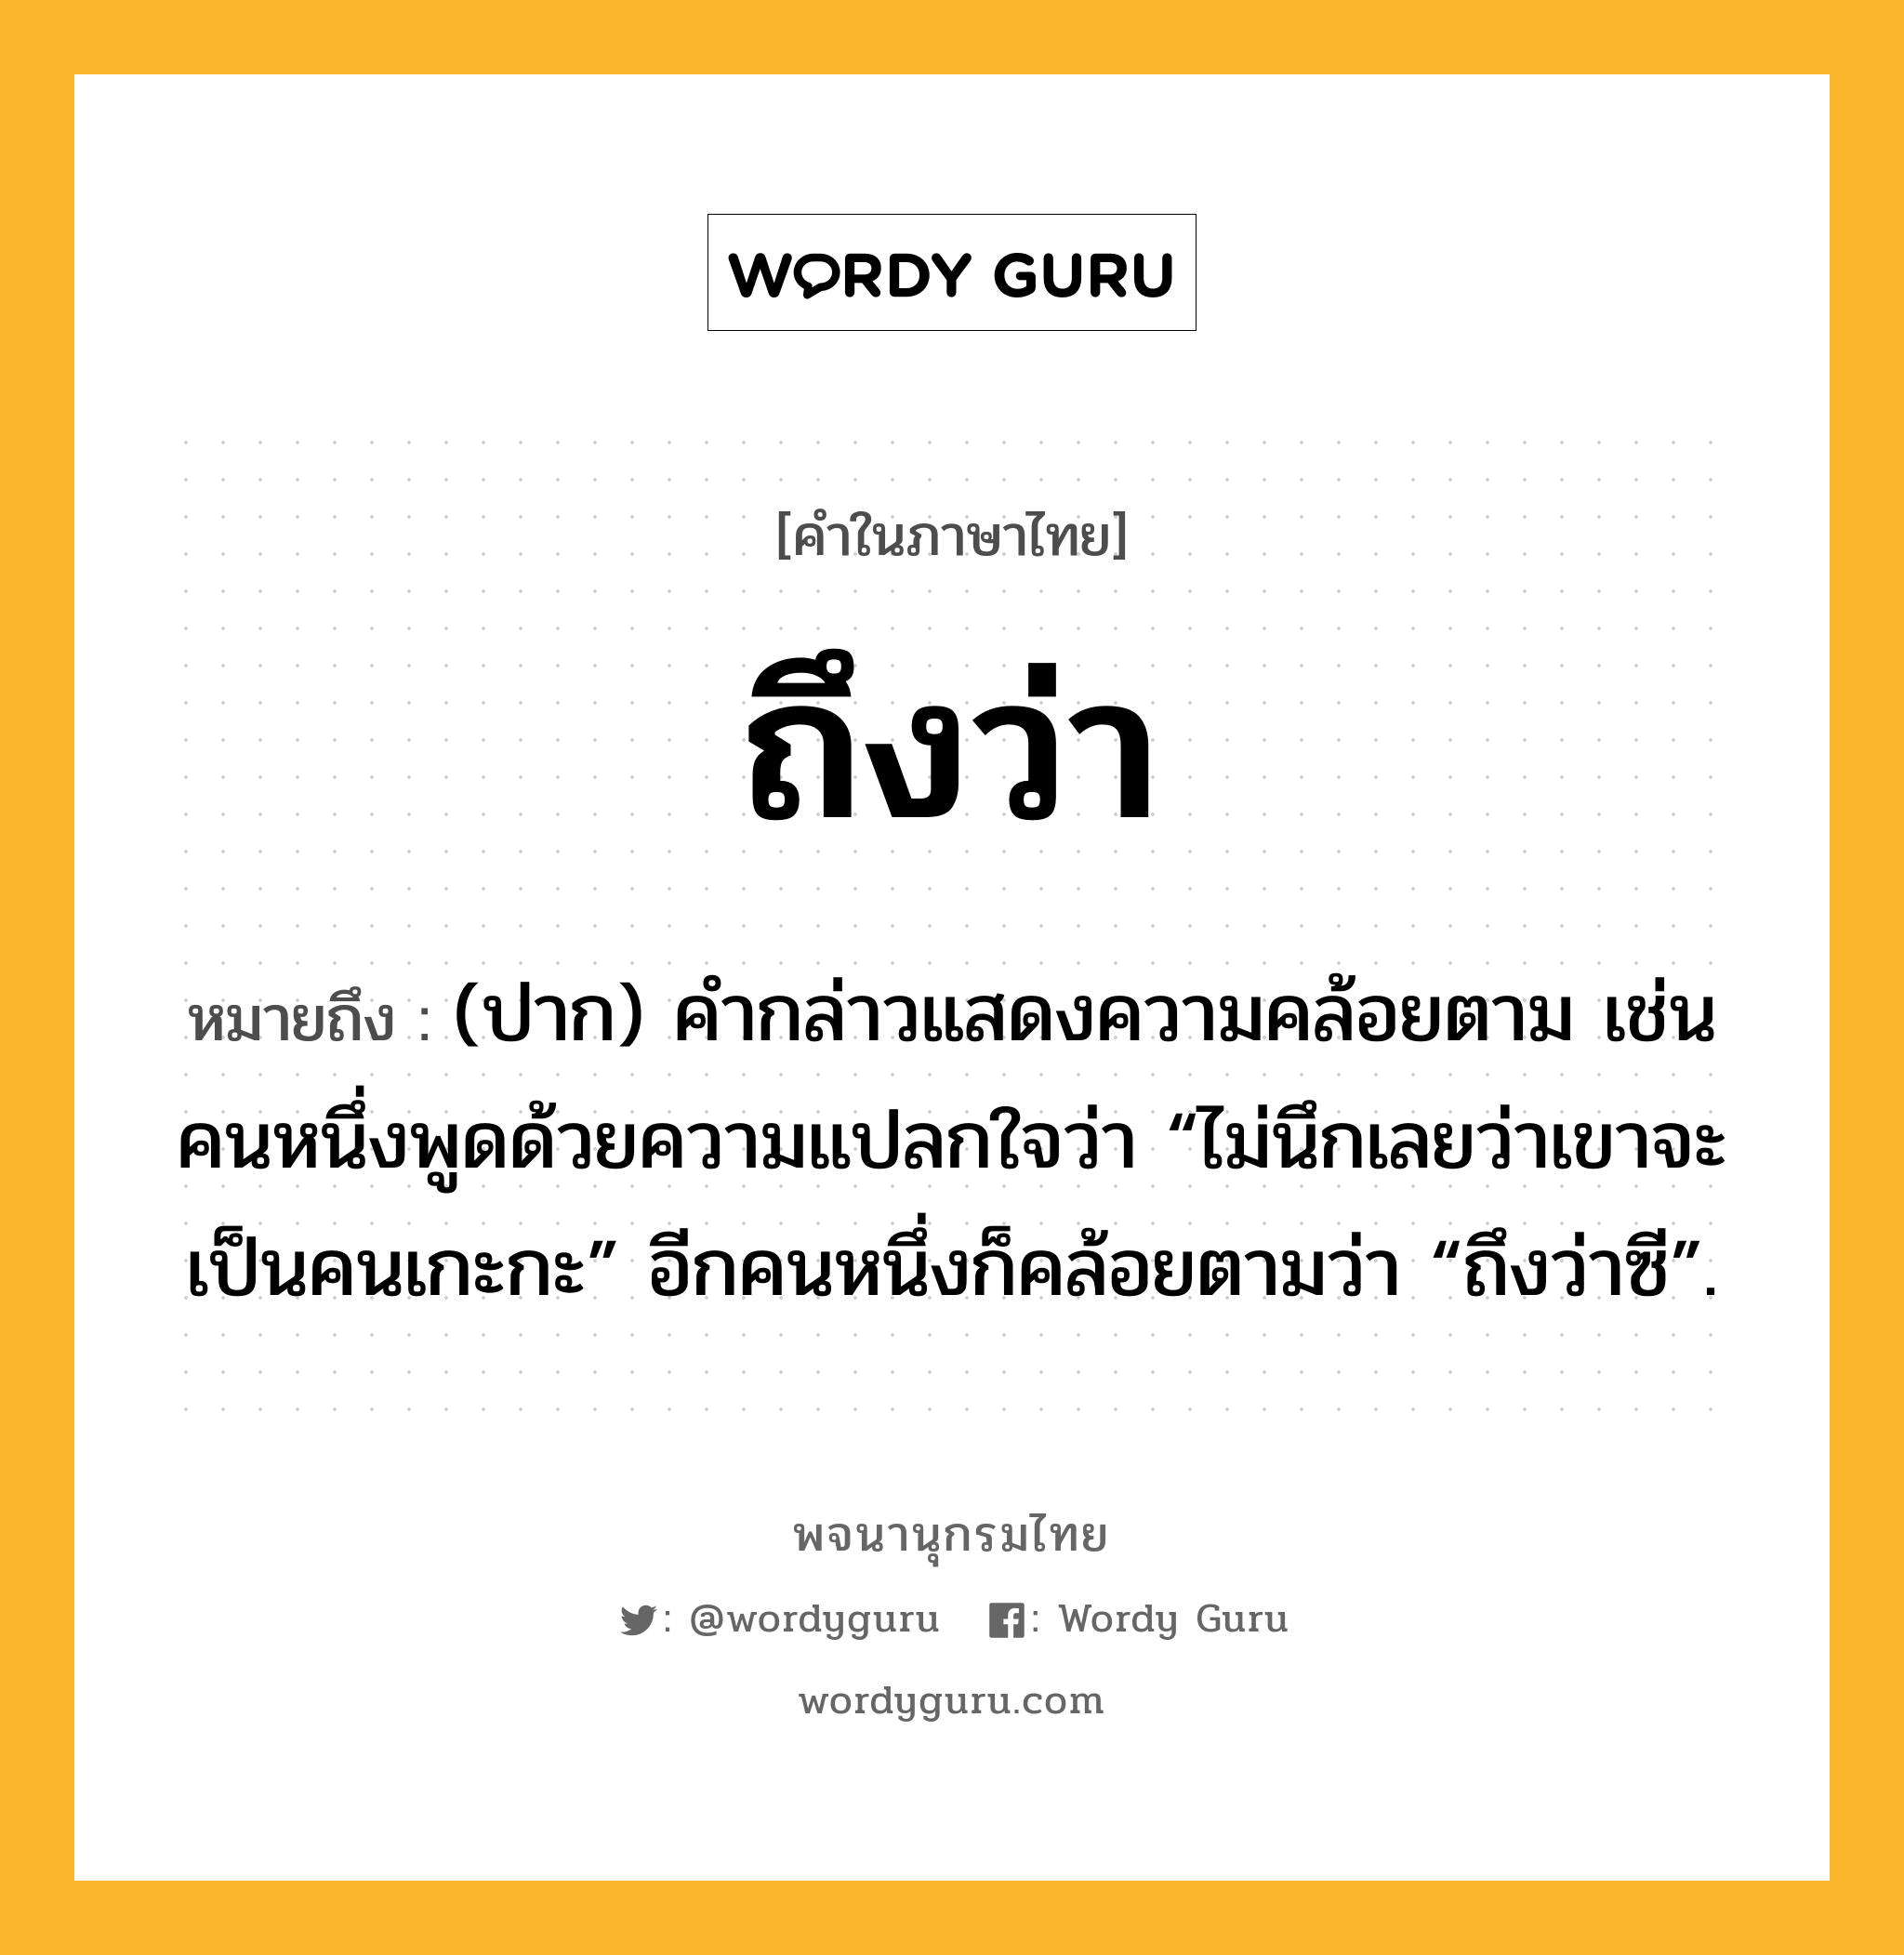 ถึงว่า หมายถึงอะไร?, คำในภาษาไทย ถึงว่า หมายถึง (ปาก) คํากล่าวแสดงความคล้อยตาม เช่น คนหนึ่งพูดด้วยความแปลกใจว่า “ไม่นึกเลยว่าเขาจะเป็นคนเกะกะ” อีกคนหนึ่งก็คล้อยตามว่า “ถึงว่าซี”.